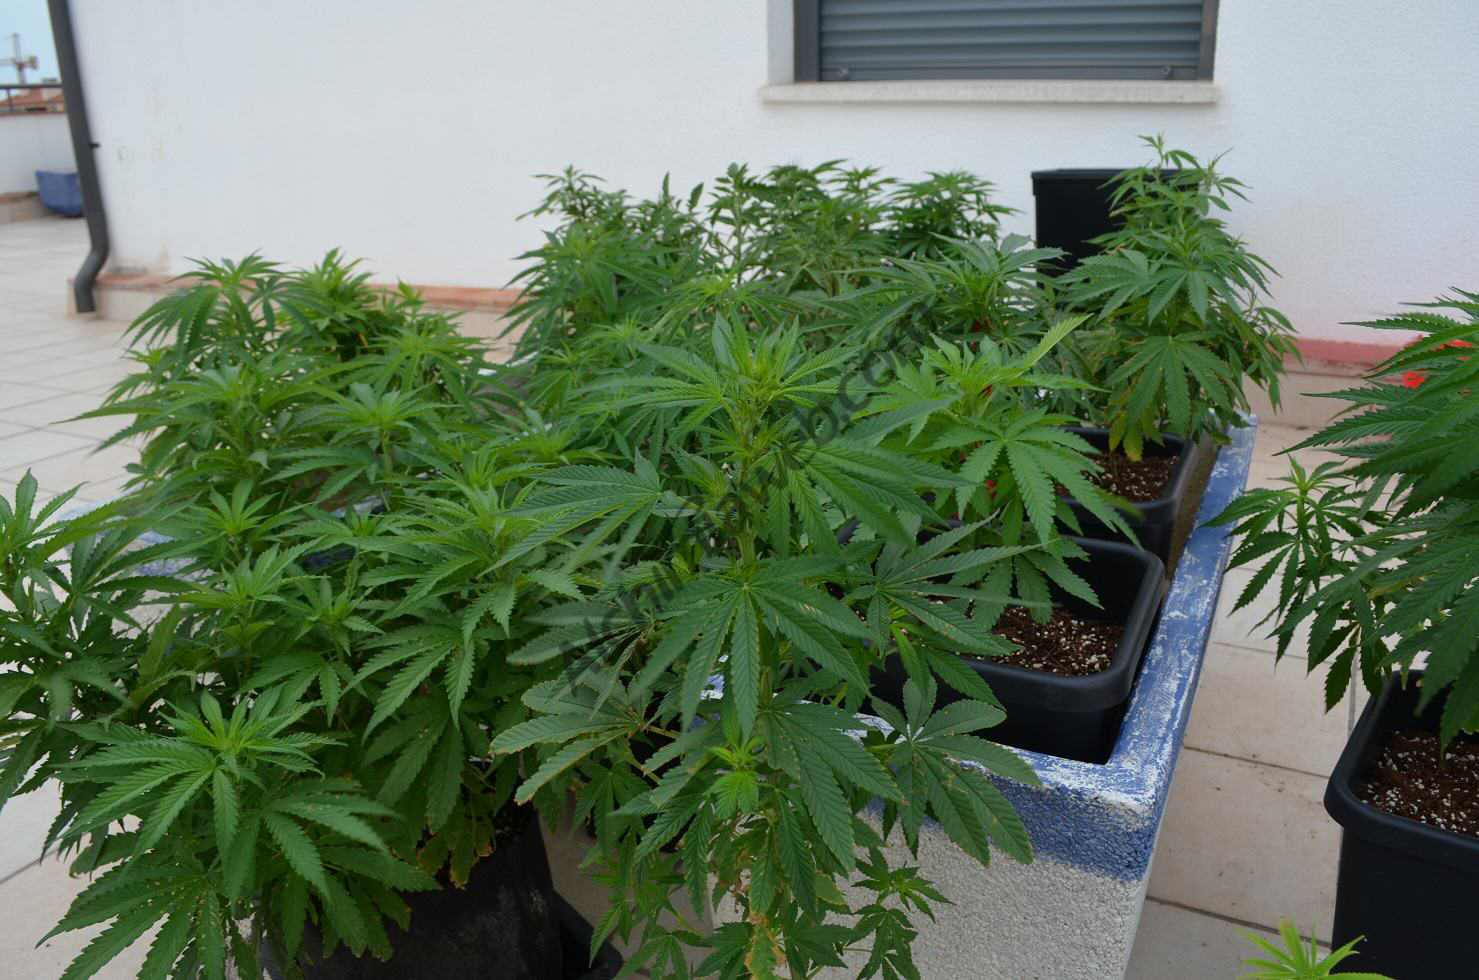 Small outdoor marijuana garden, grown in coco with BioTabs